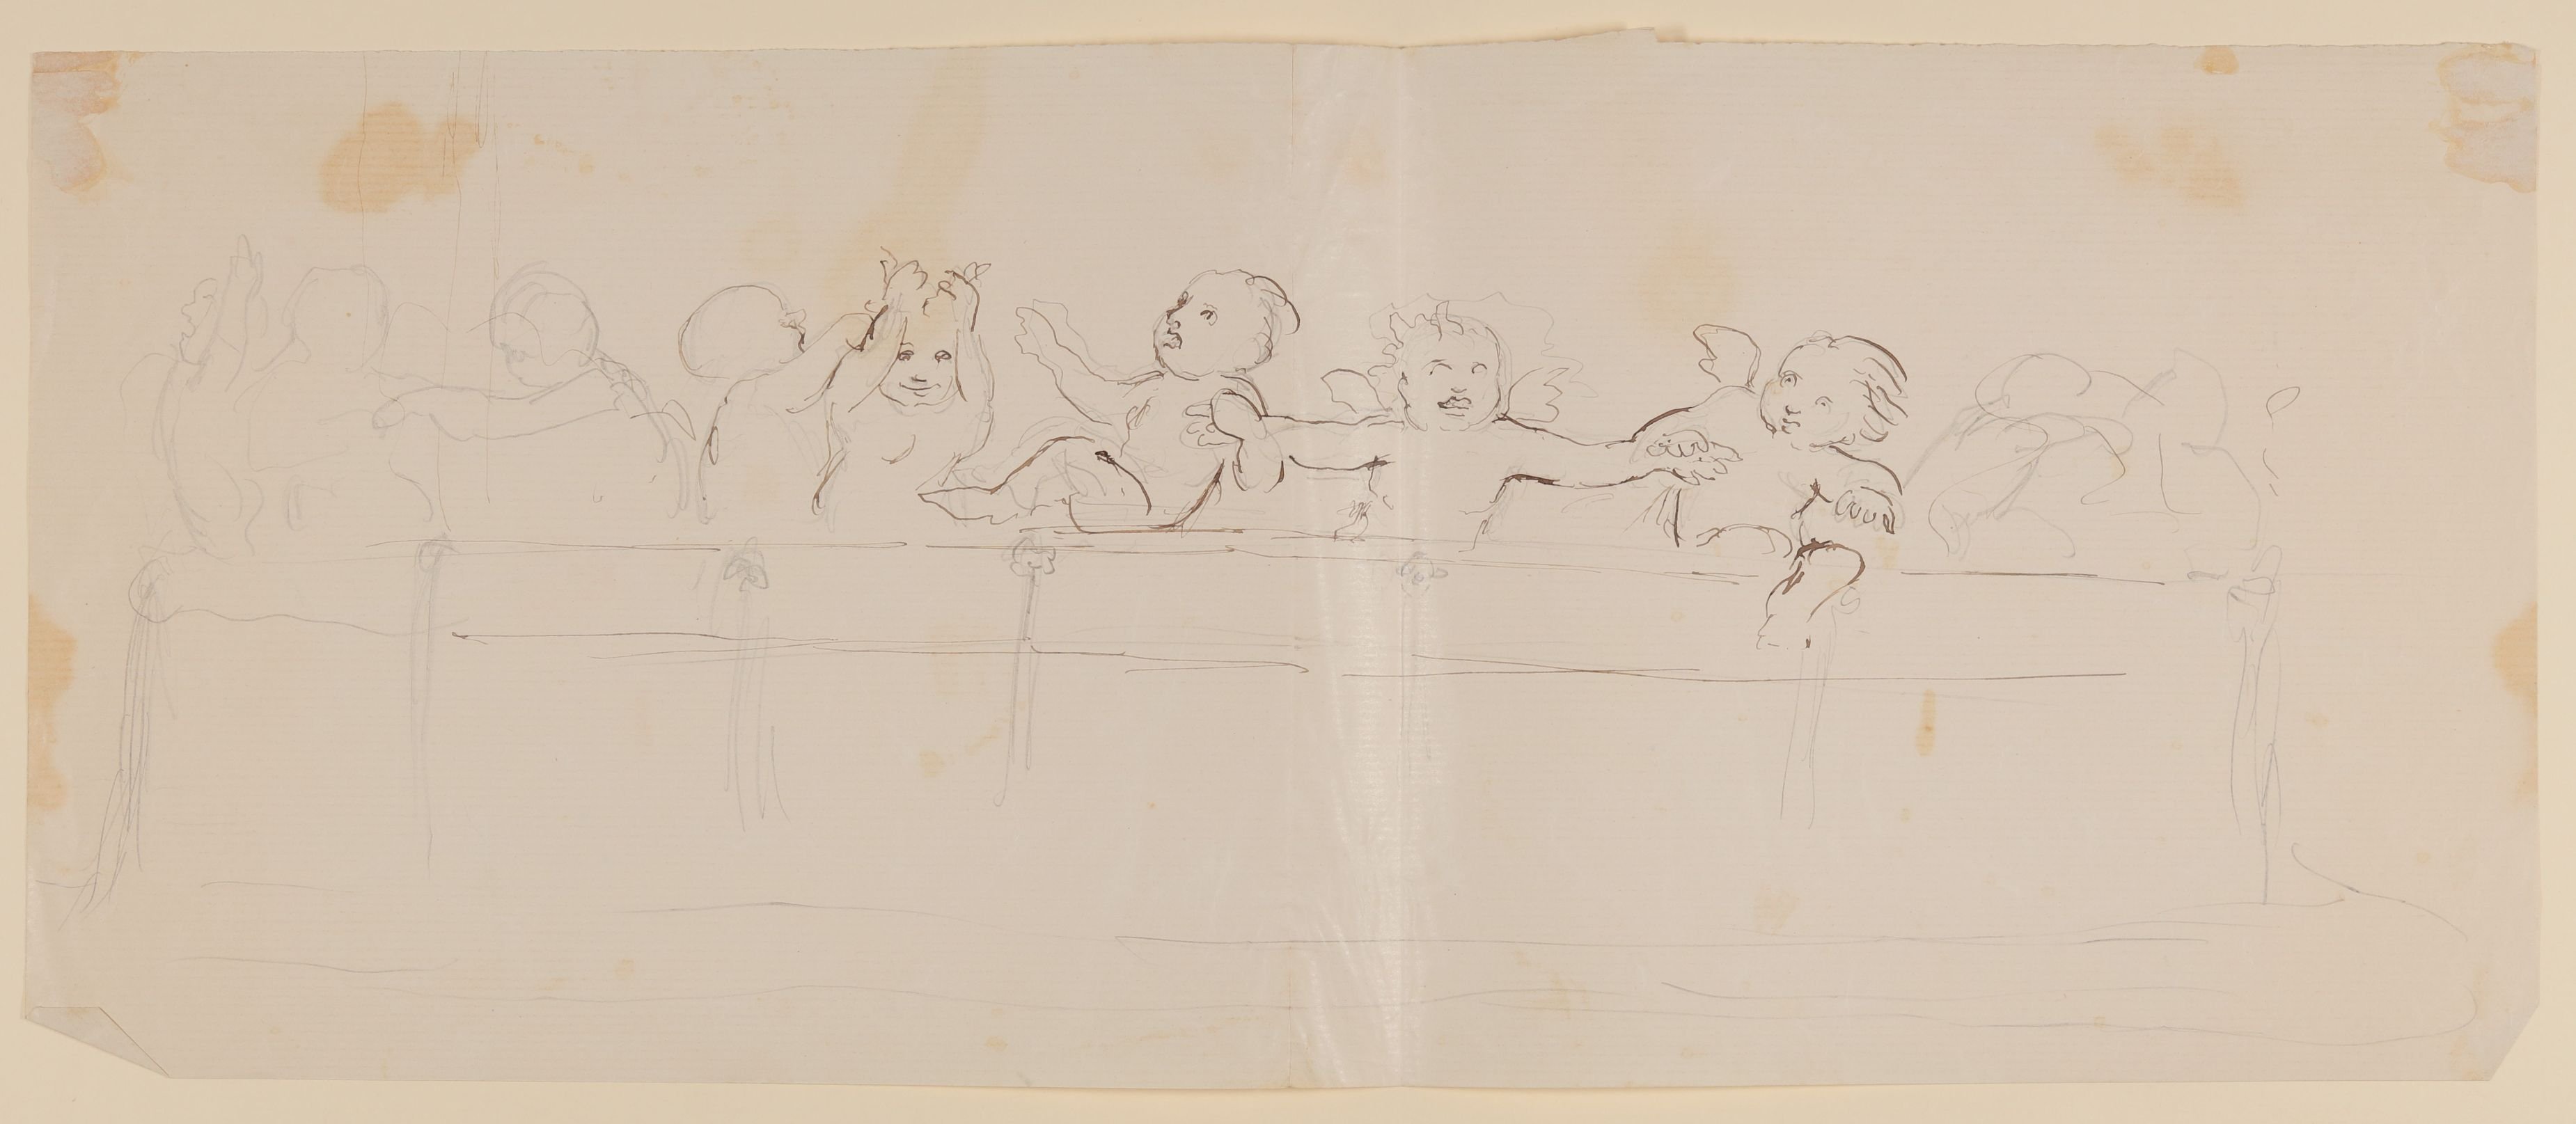 Acht spielende Engelchen über einer Balustrade [aus einer Mappe mit Skizzenblättern von Gisela von Arnim und Herman Grimm] (Freies Deutsches Hochstift CC BY-NC-SA)